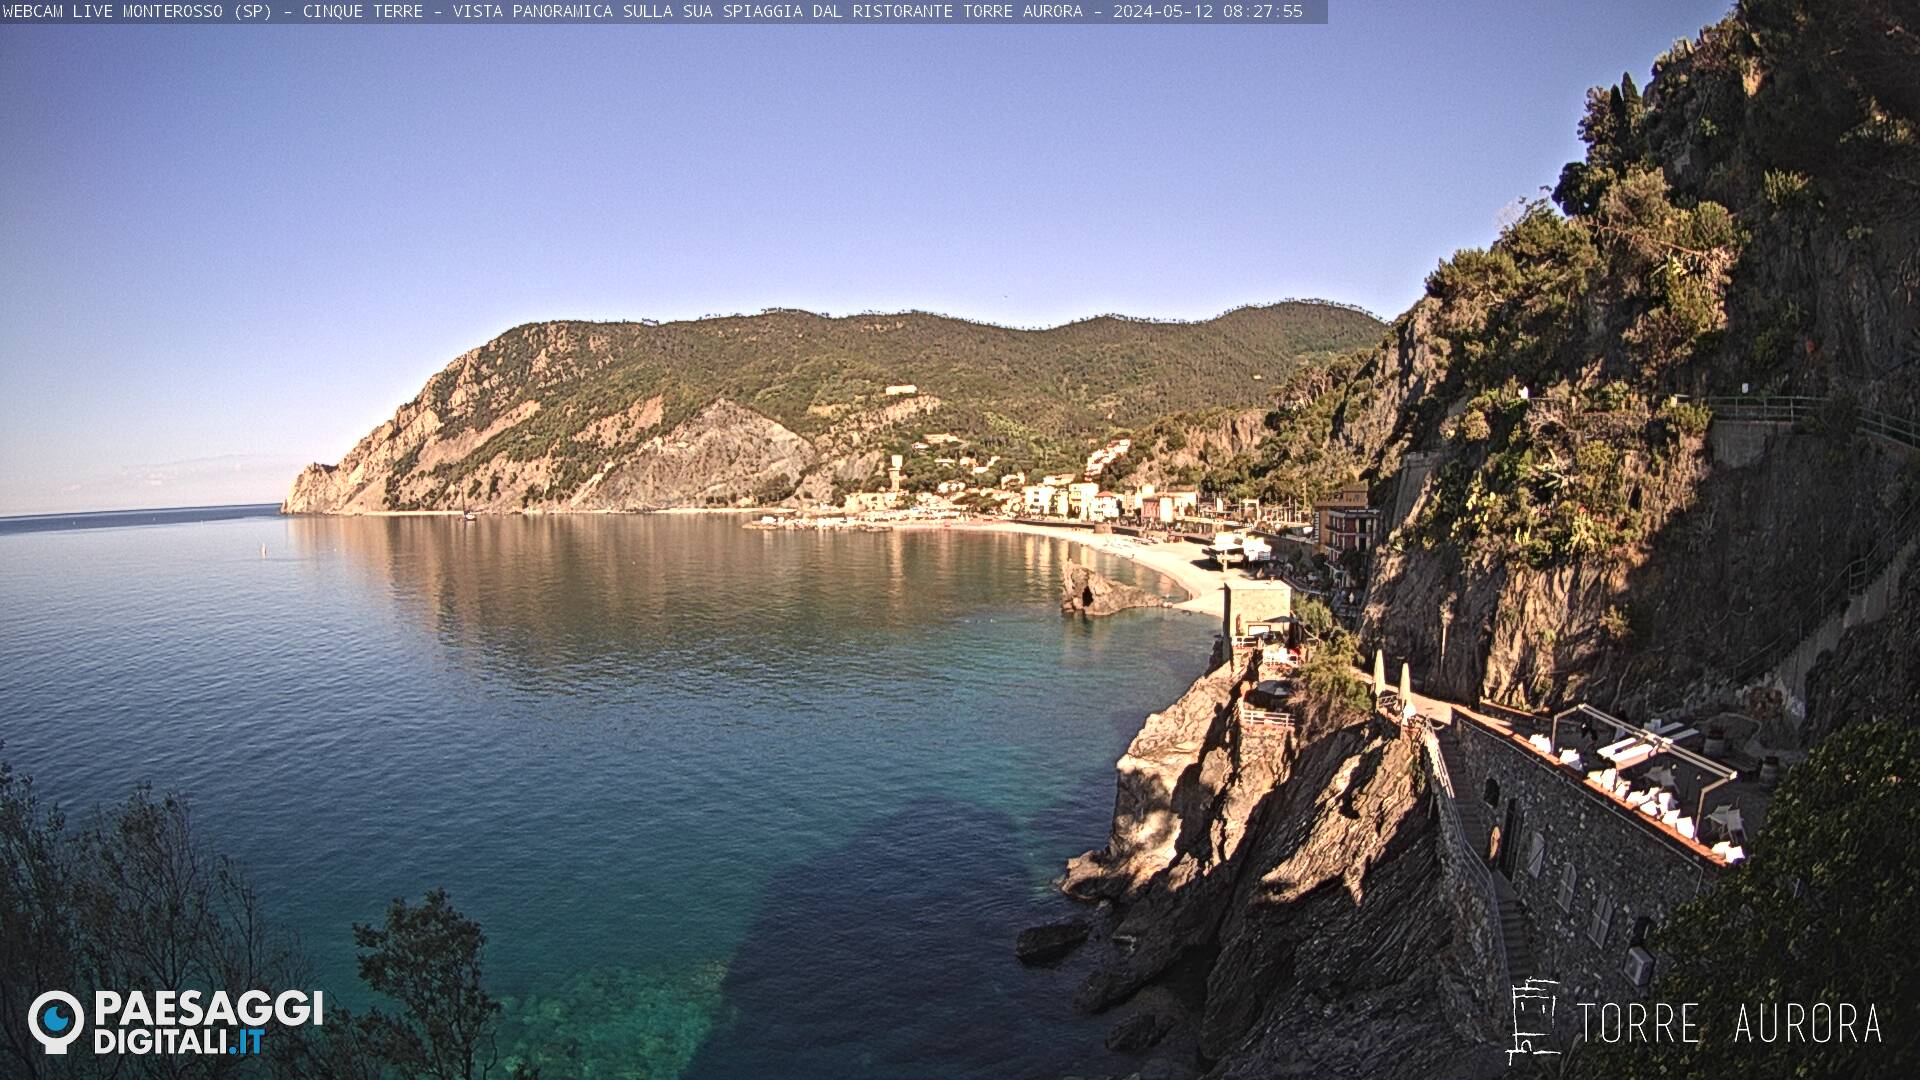 Monterosso al Mare (Cinque Terre) Do. 08:28